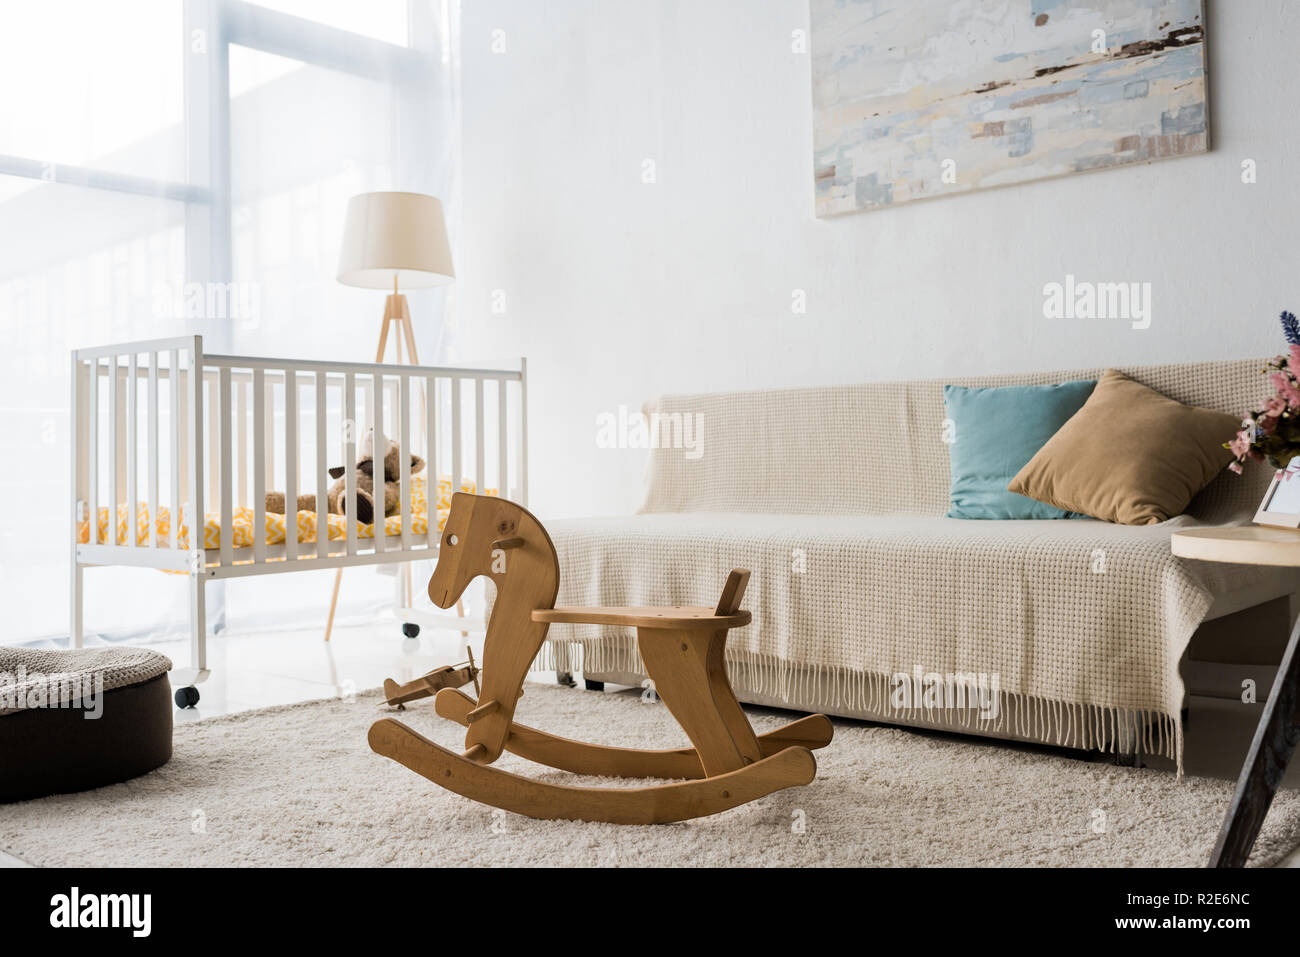 Moderne Raumgestaltung Kinderzimmer mit Kinderbett und Schaukelpferd Stuhl Stockfoto